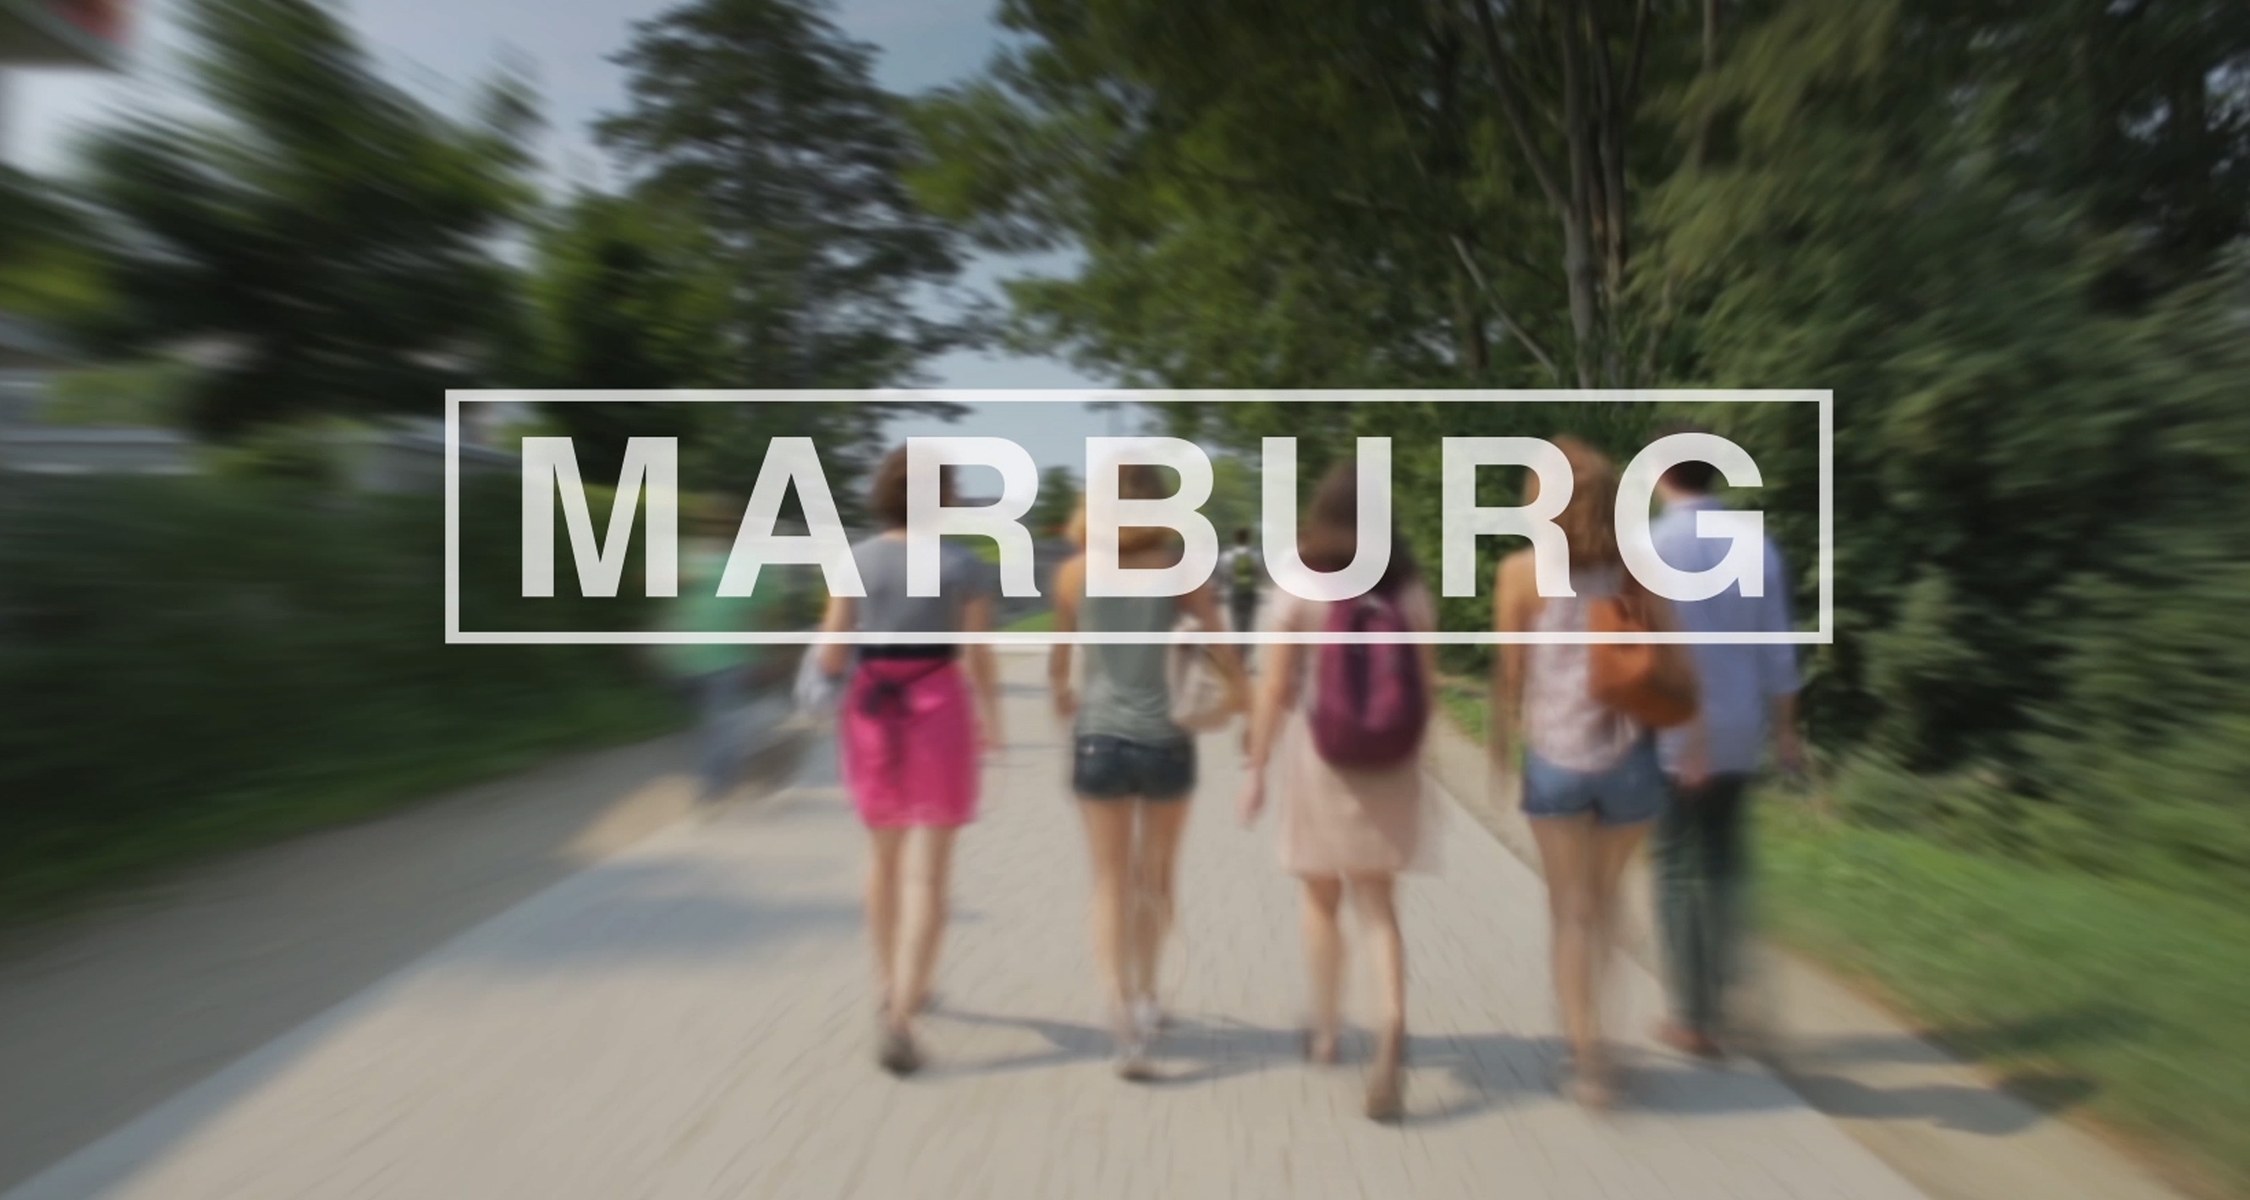 Was erwartet junge Menschen, die sich für ein Studium in Marburg interessieren? Dieses Video nimmt euch mit auf einen rasanten Trip durch die Stadt und die Universität.